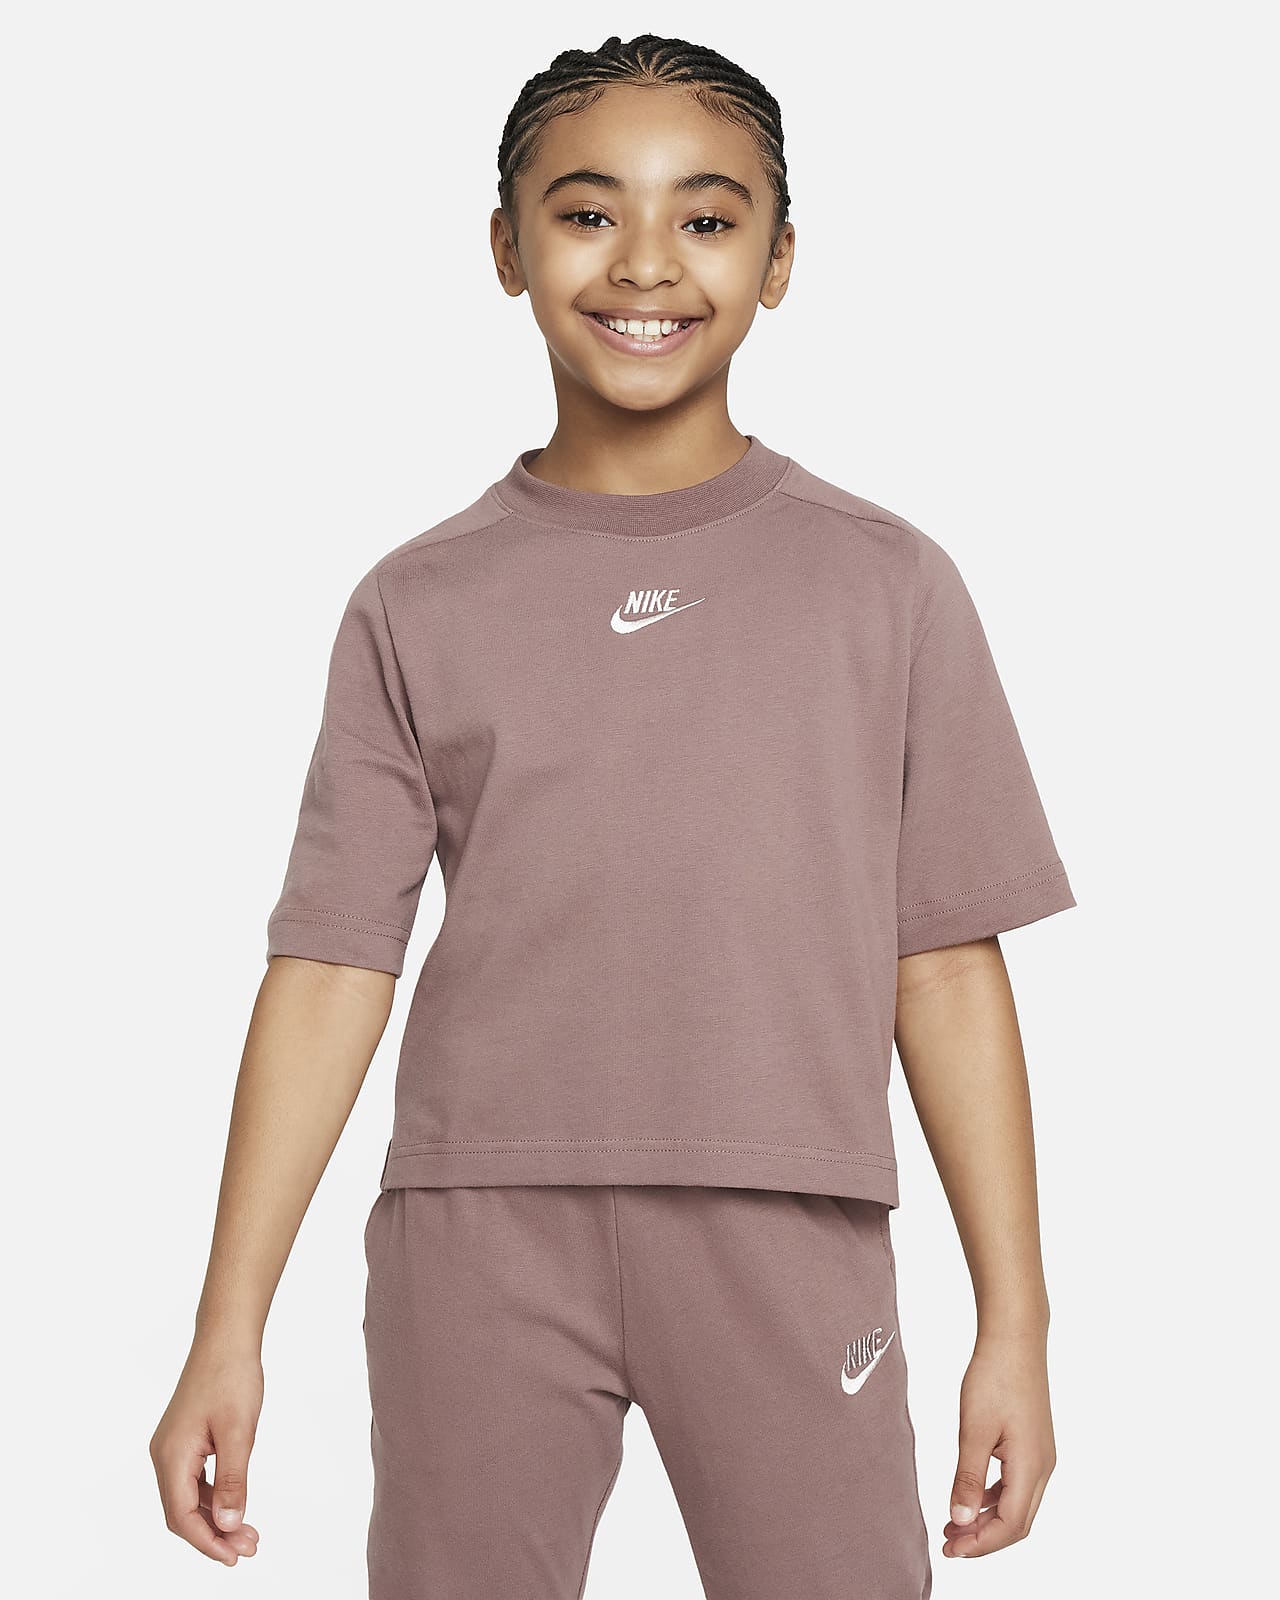 Tričko Nike Sportswear s krátkým rukávem pro větší děti (dívky)